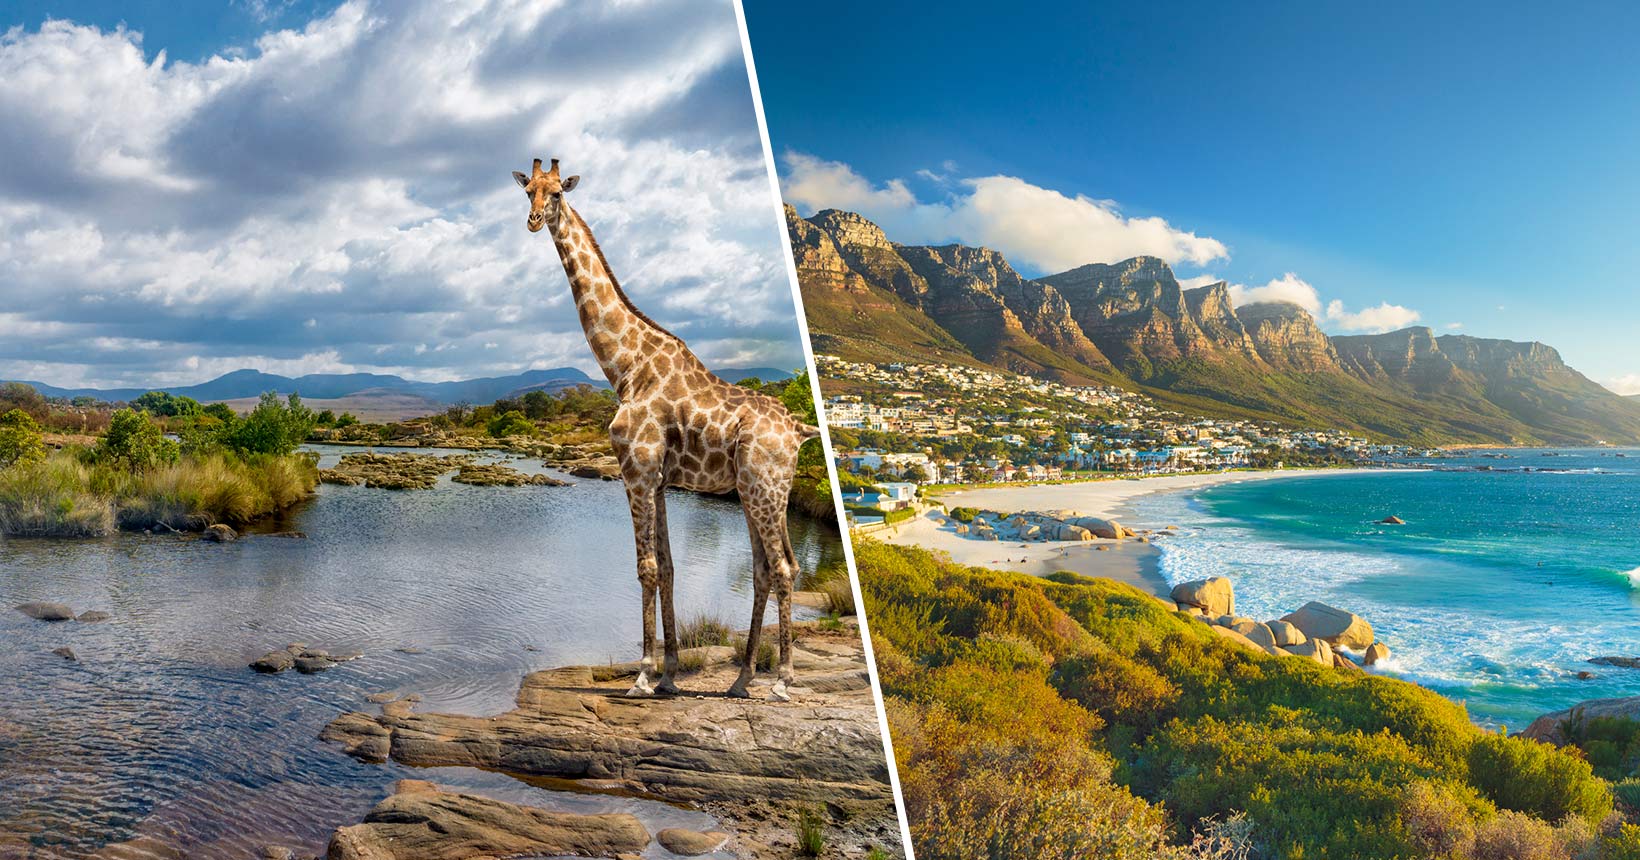 África do Sul 2 em 1! Passagens para Joanesburgo mais Cidade do Cabo na mesma viagem a partir de R$ 1.740!